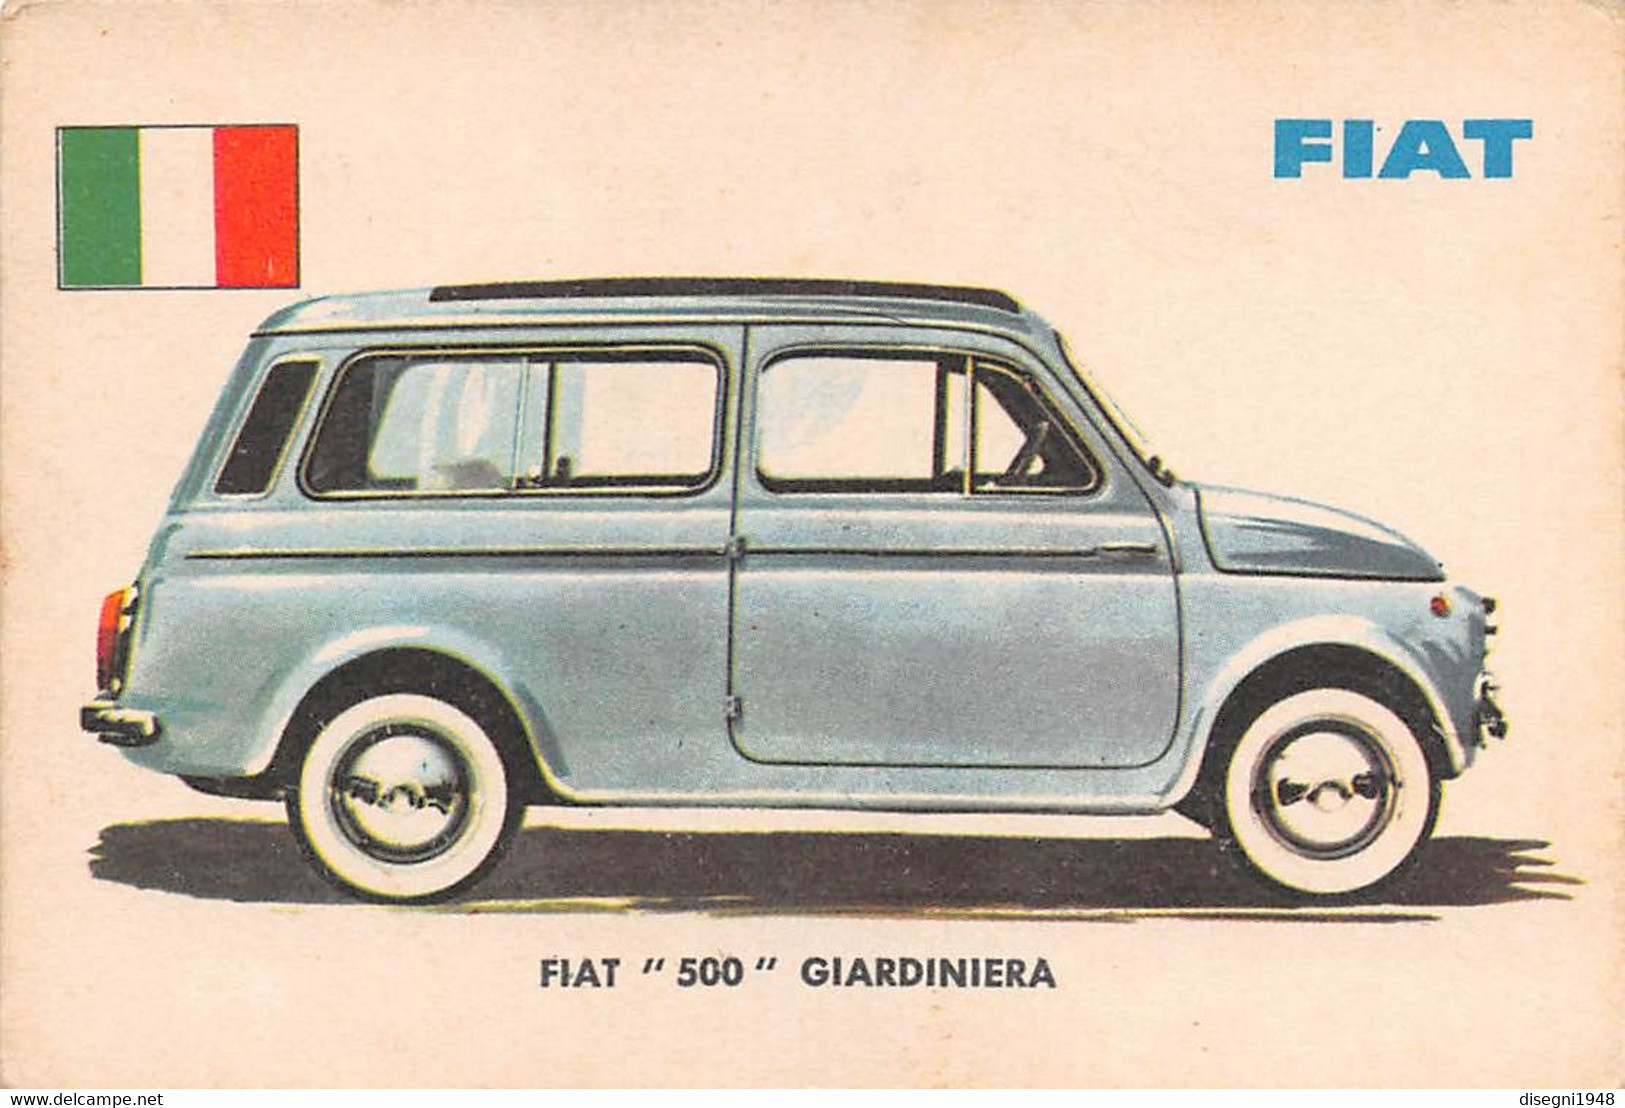 11932 "FIAT 500 GIARDINIERA 14 - AUTO INTERNATIONAL PARADE - SIDAM TORINO - 1961" FIGURINA CARTONATA ORIG. - Engine